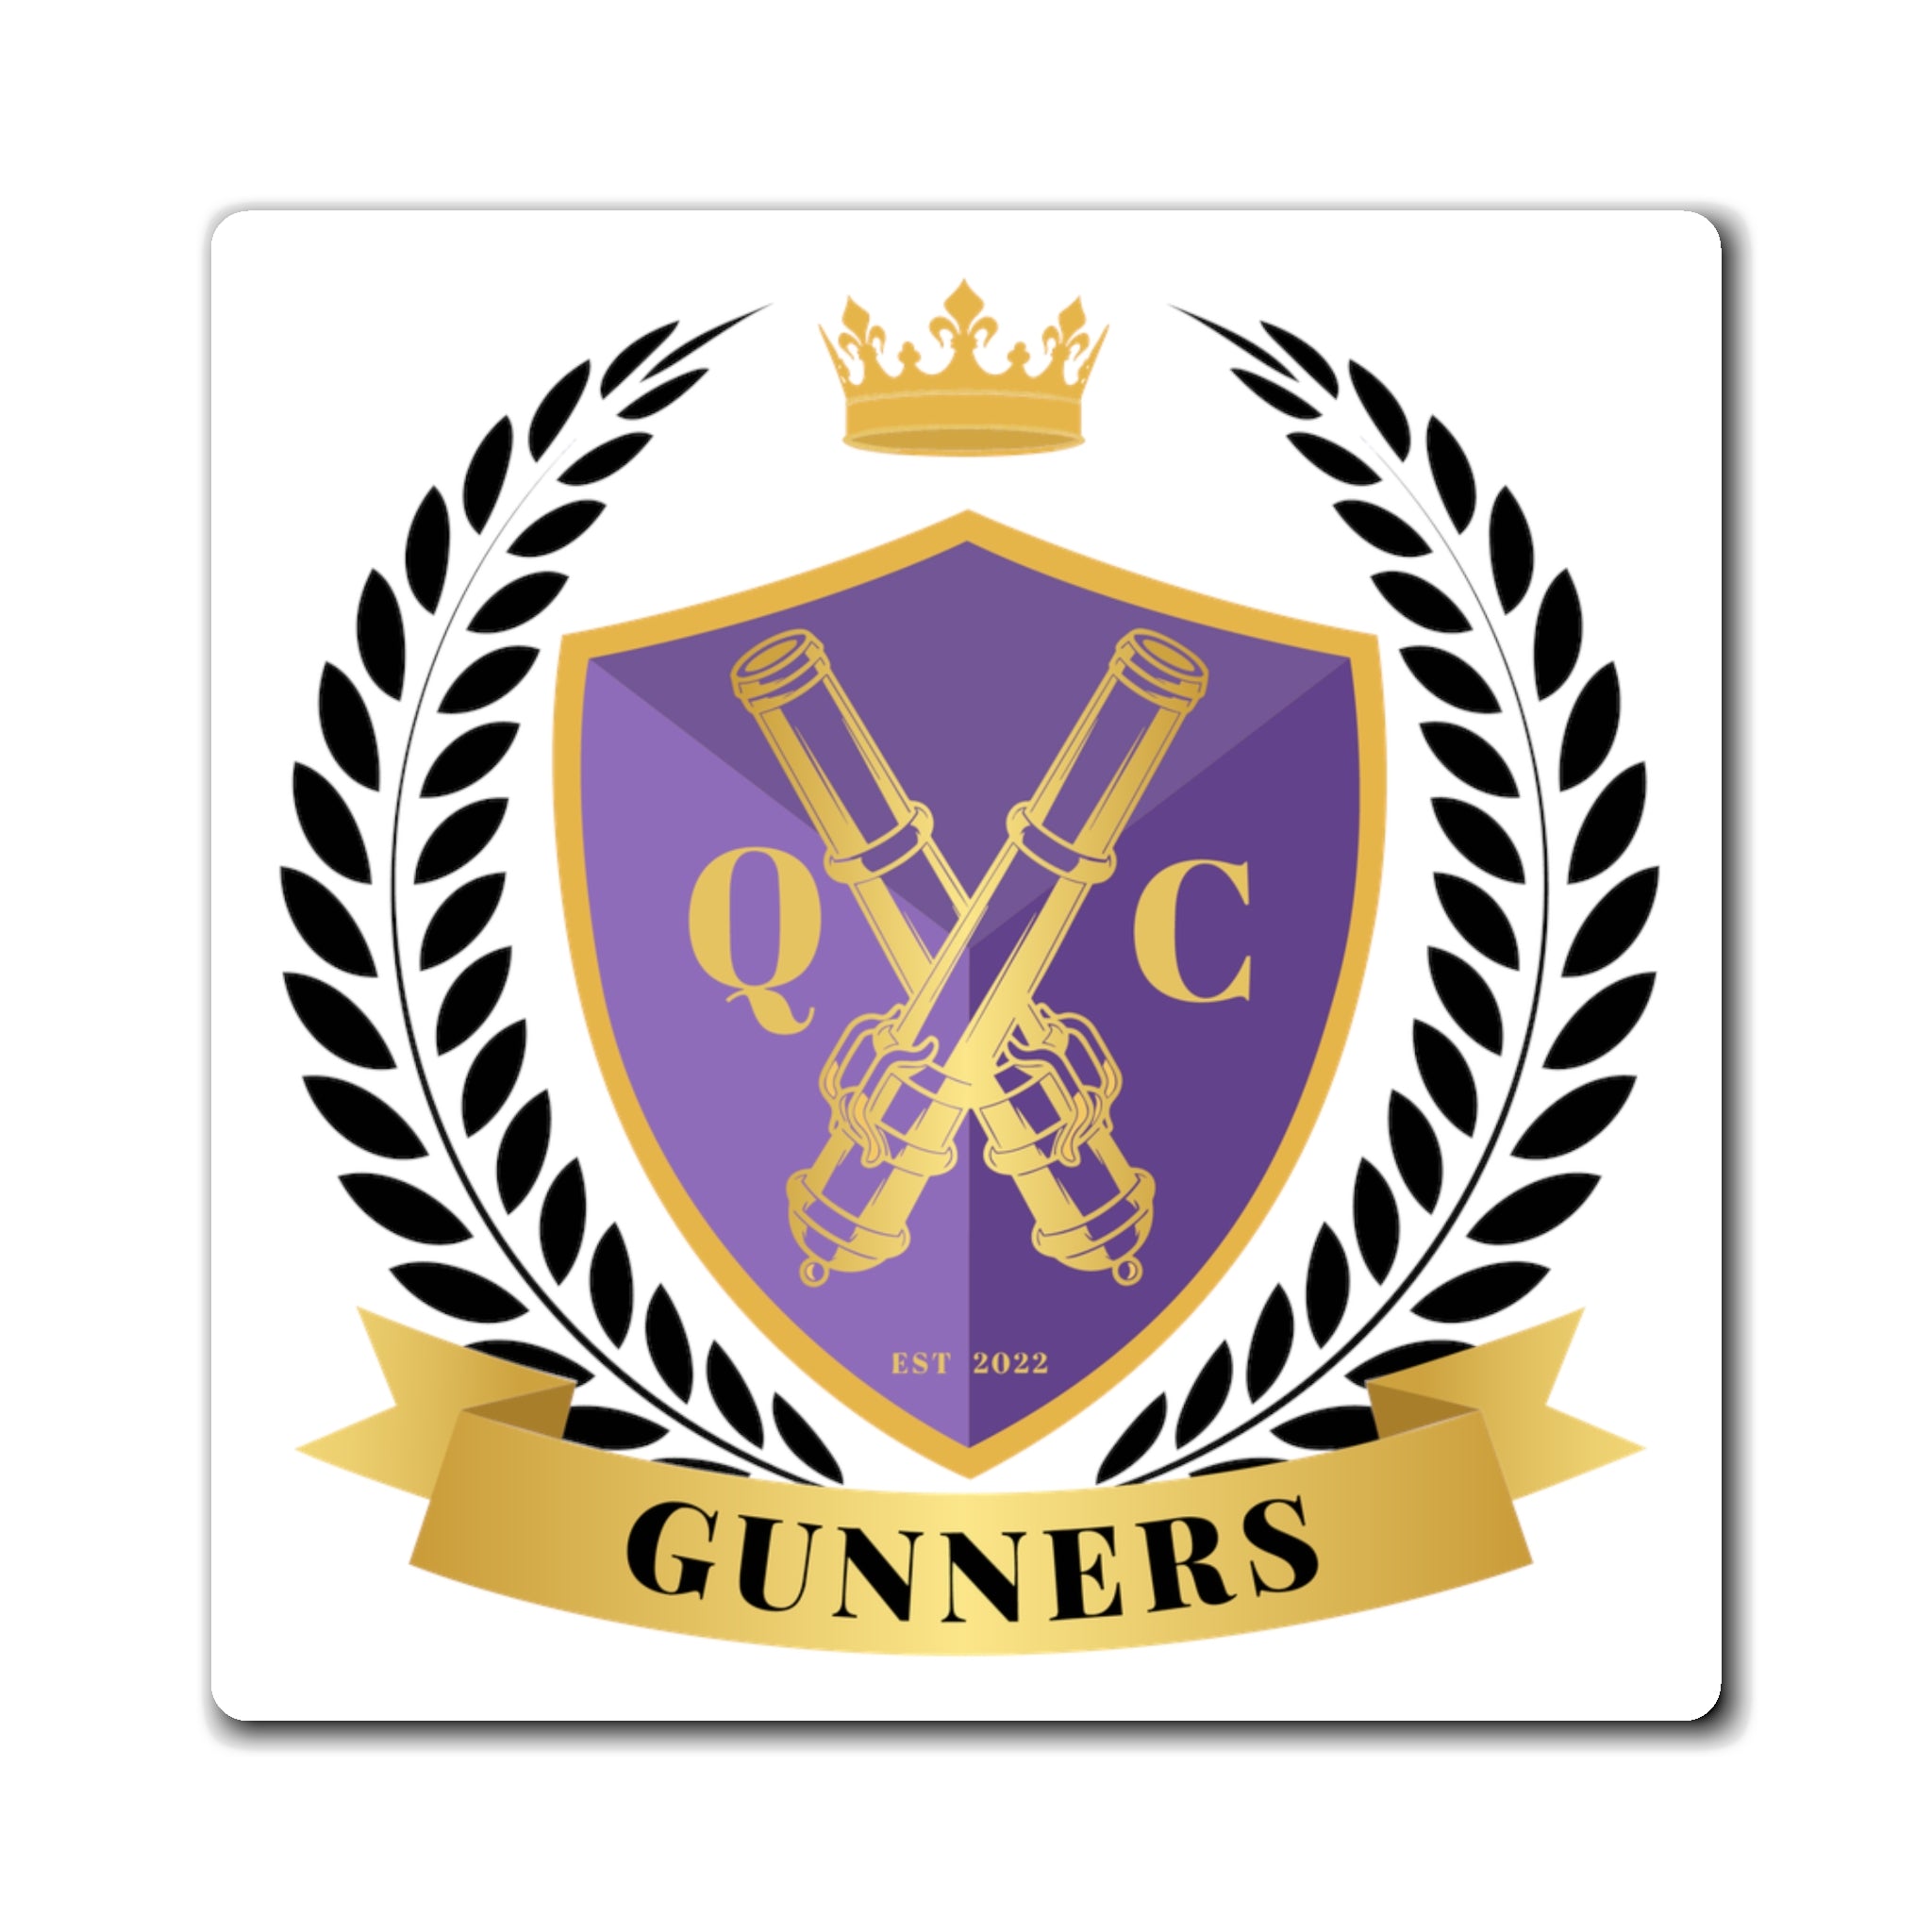 Queen City Gunners 3x3 Magnet